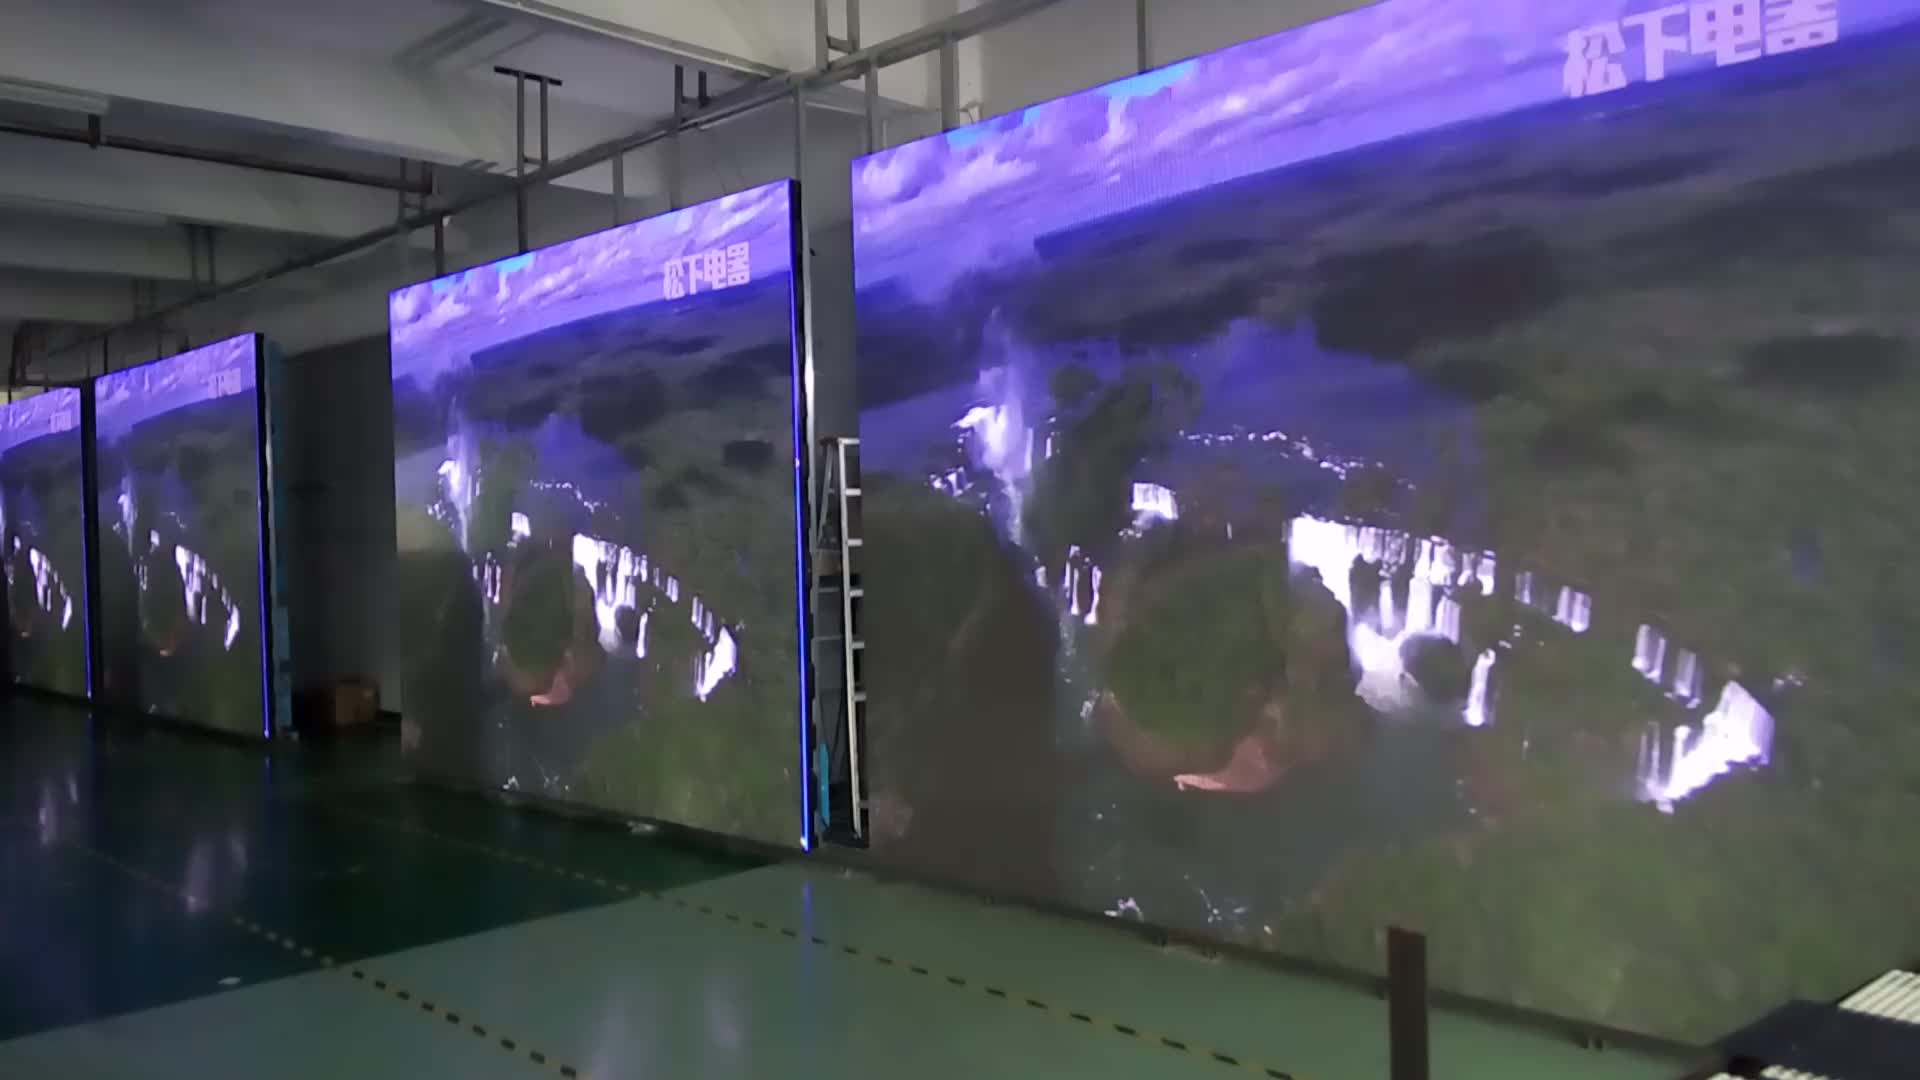 P5 led screens